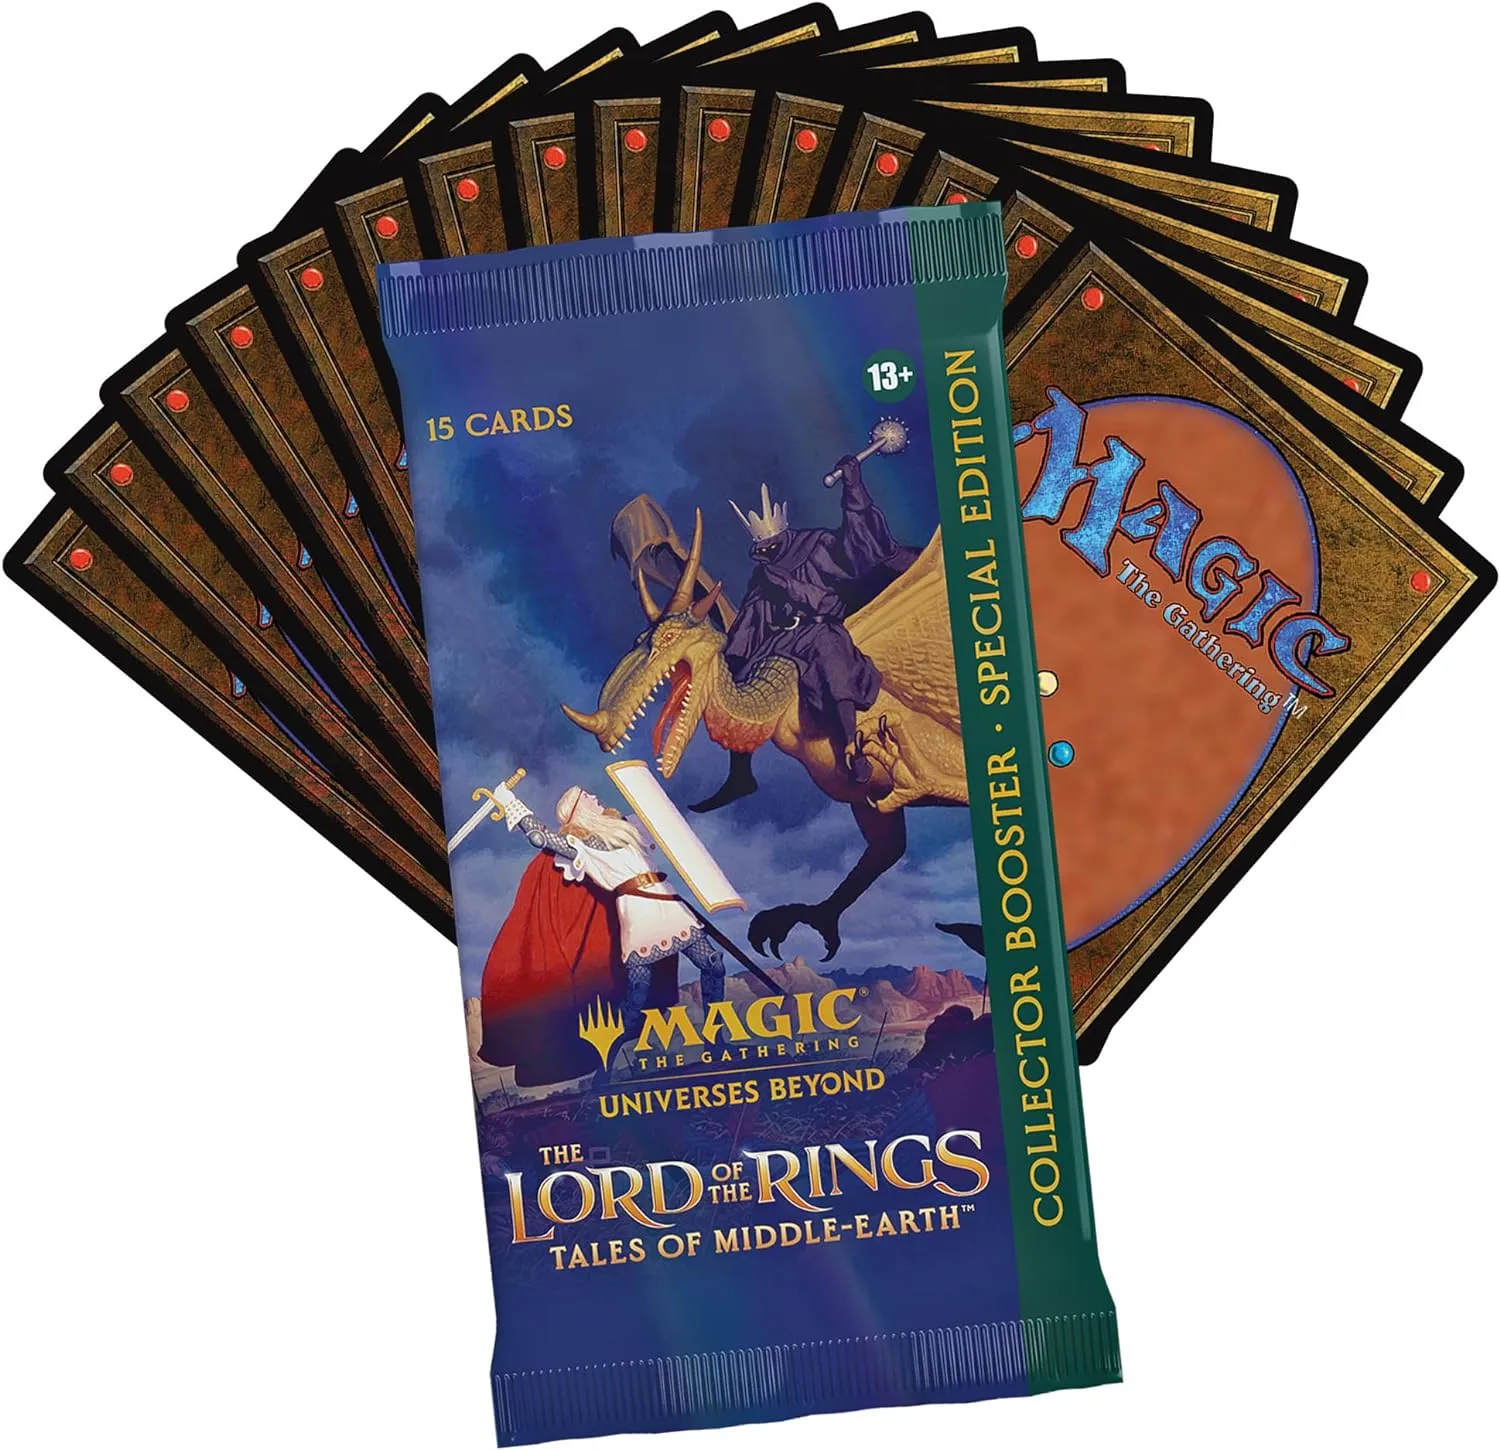 Magic The Gathering Herr der Ringe – Geschichten aus Mittelerde Collector Booster Mtg Original